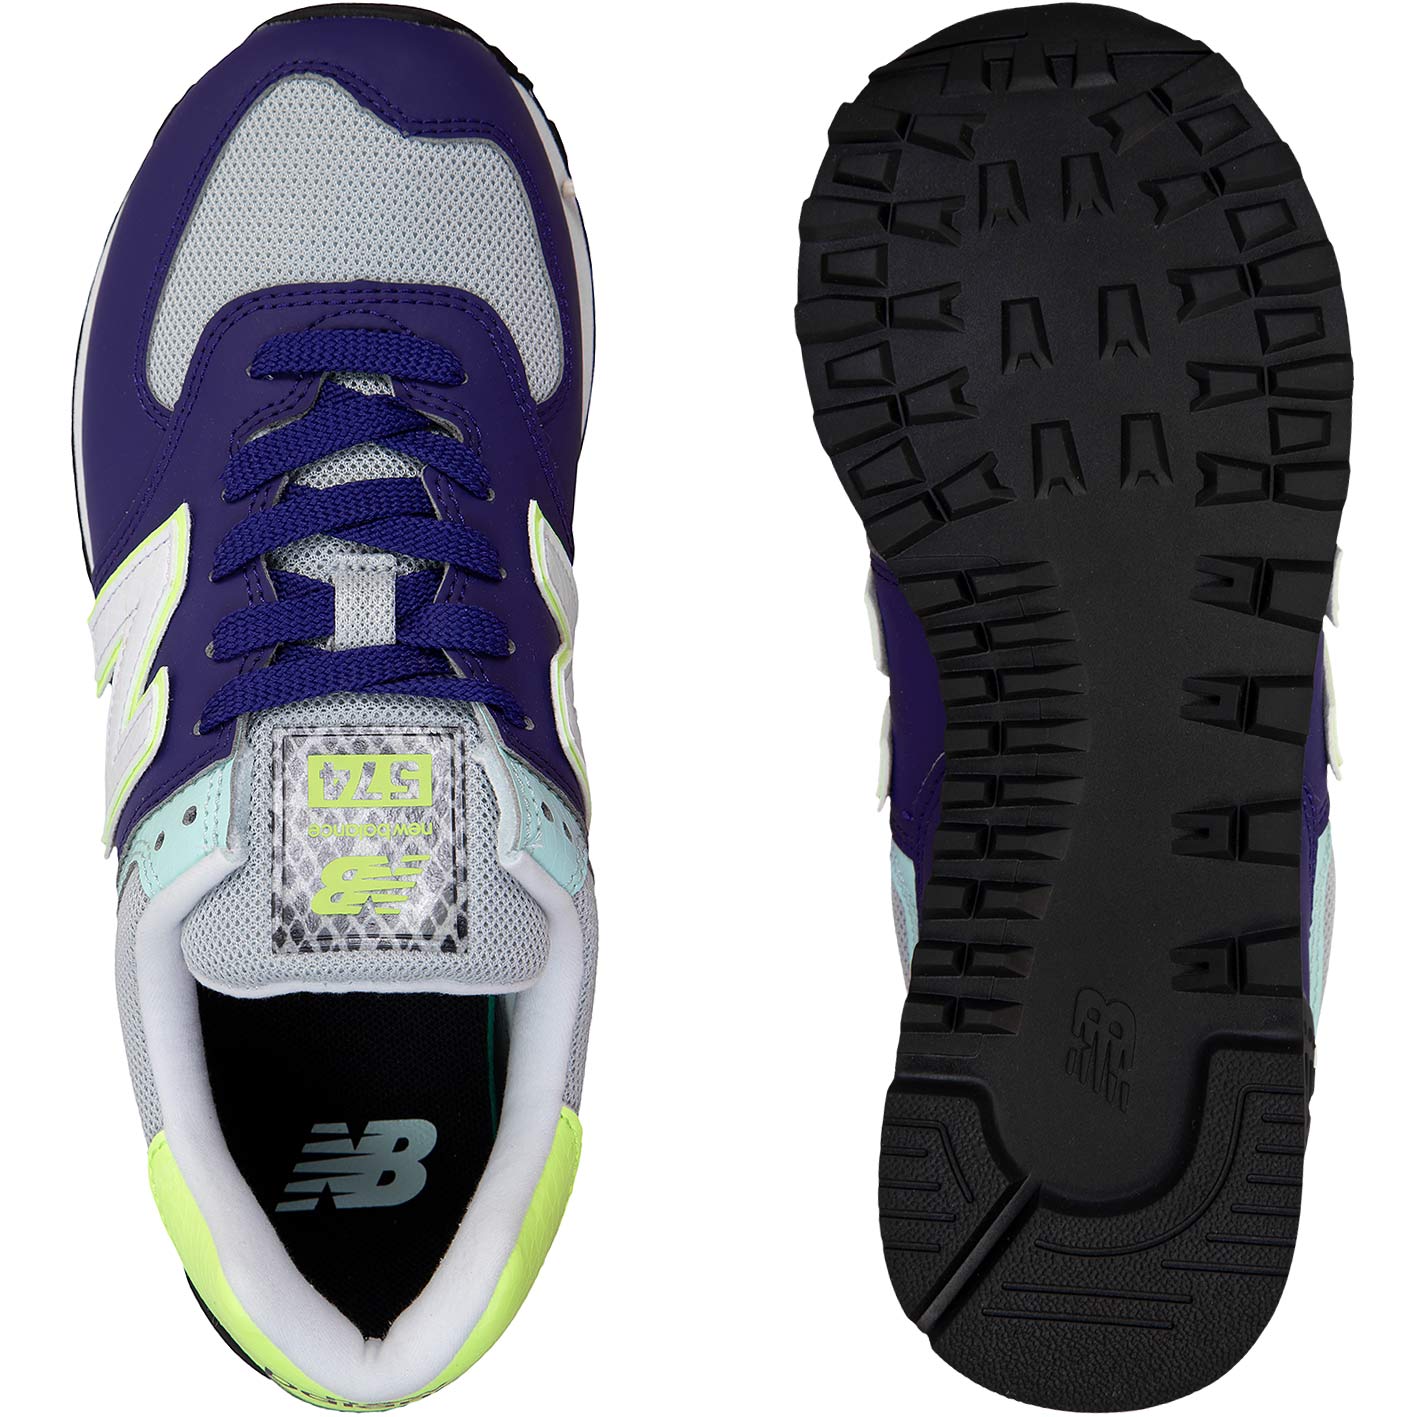 ☆ New Balance NB 574 Damen Sneaker Schuhe lila - hier bestellen!